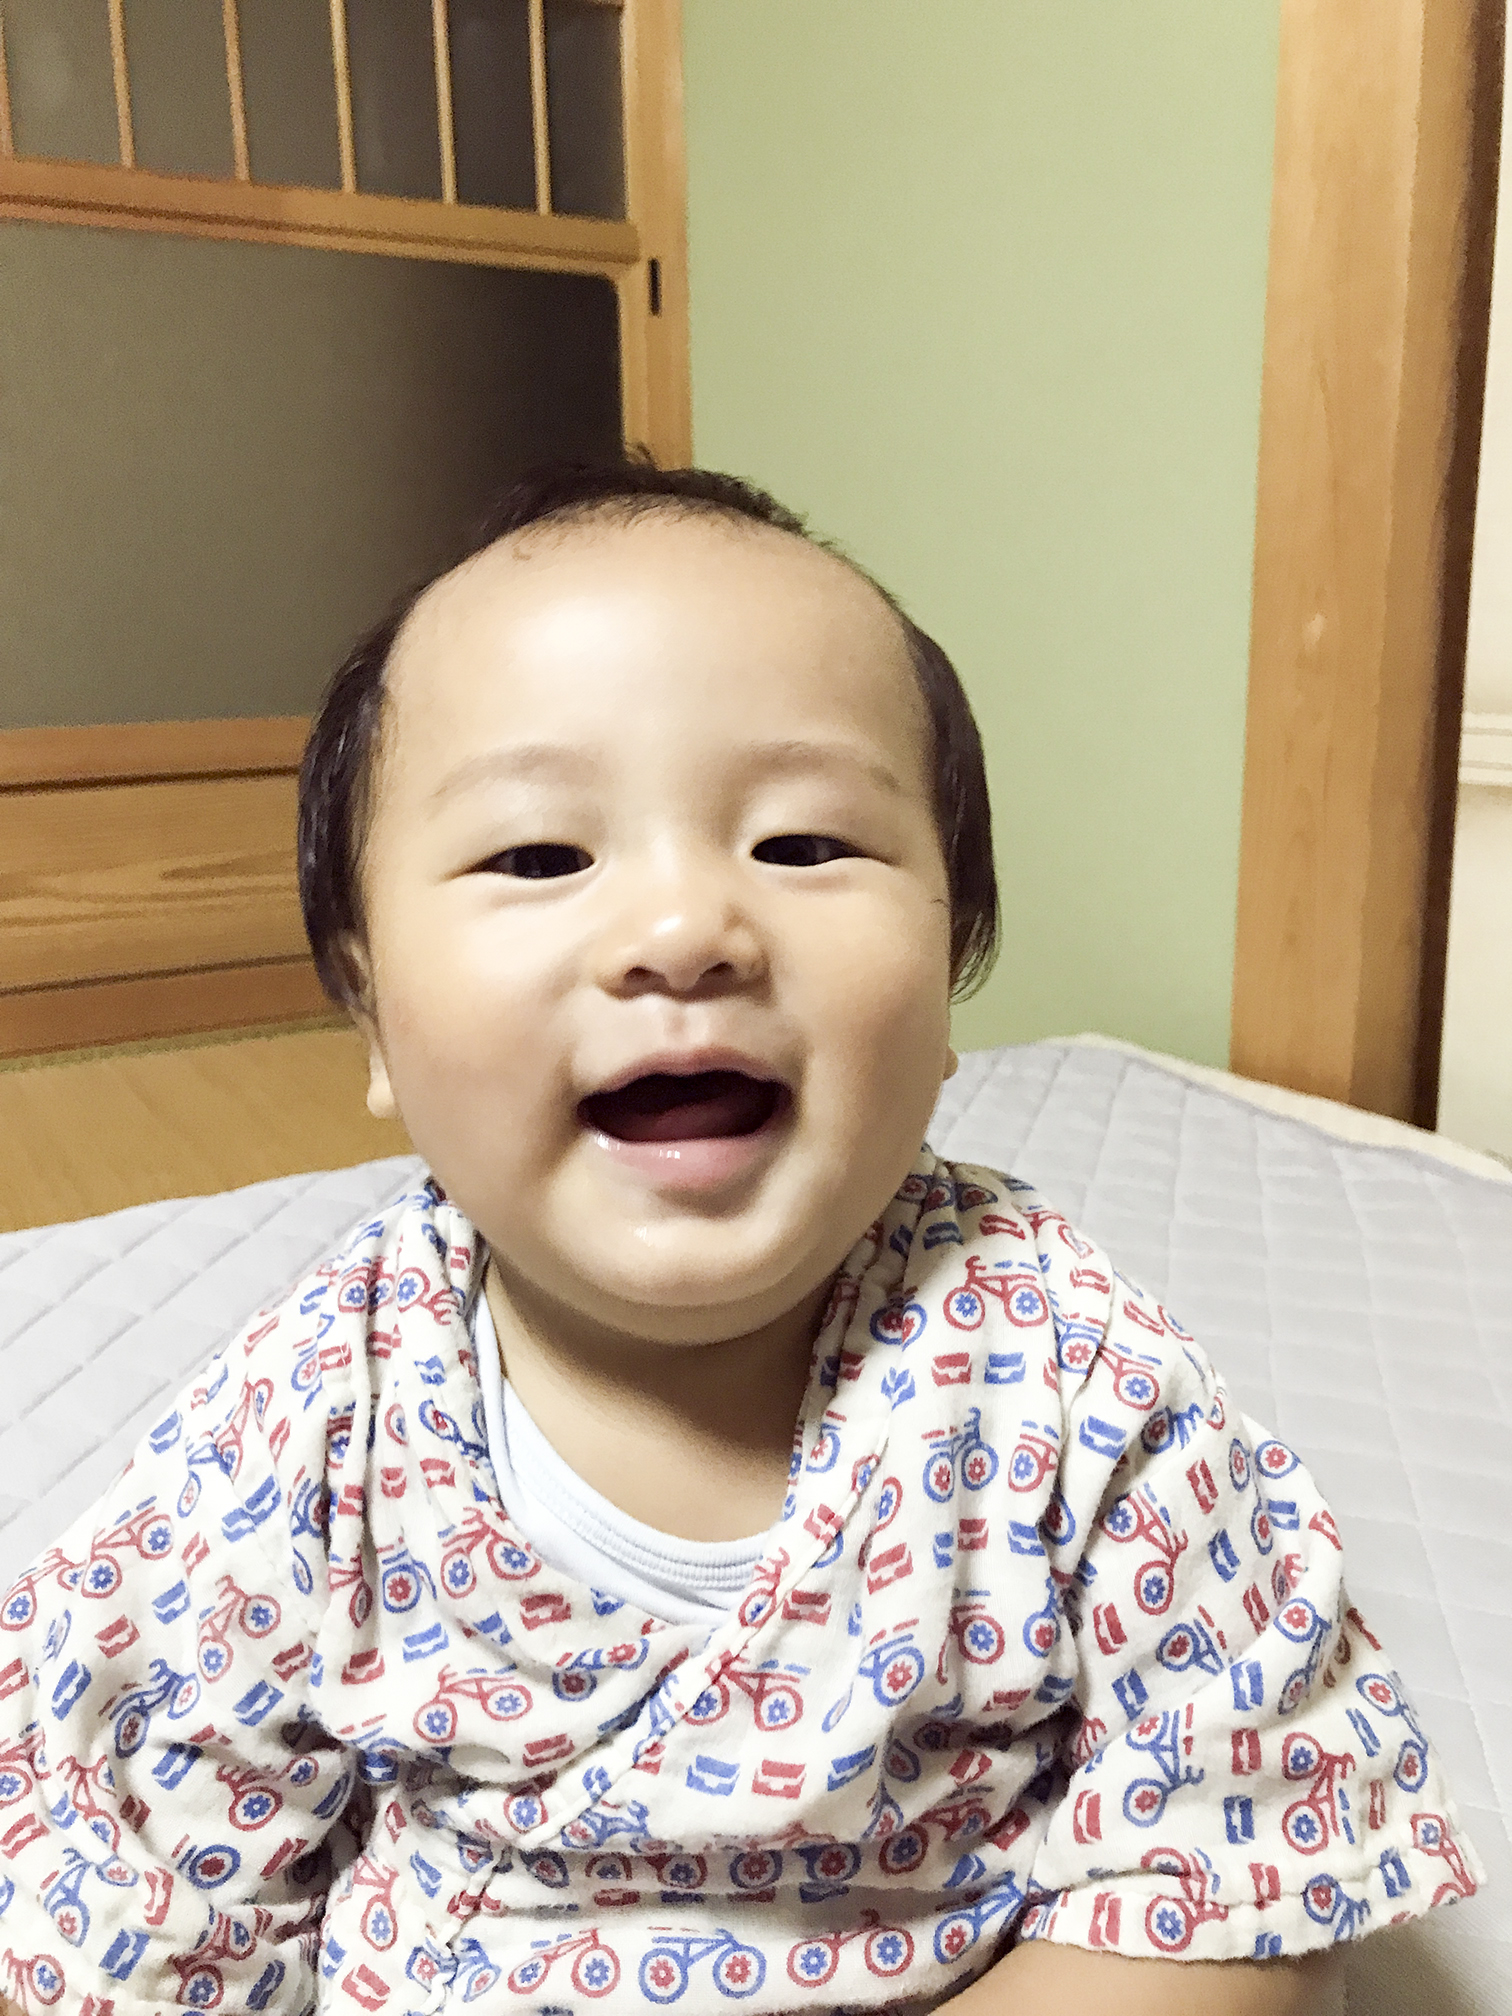 広報津山「おめでとう赤ちゃん」-令和2年12月生まれ(満1歳)の赤ちゃん